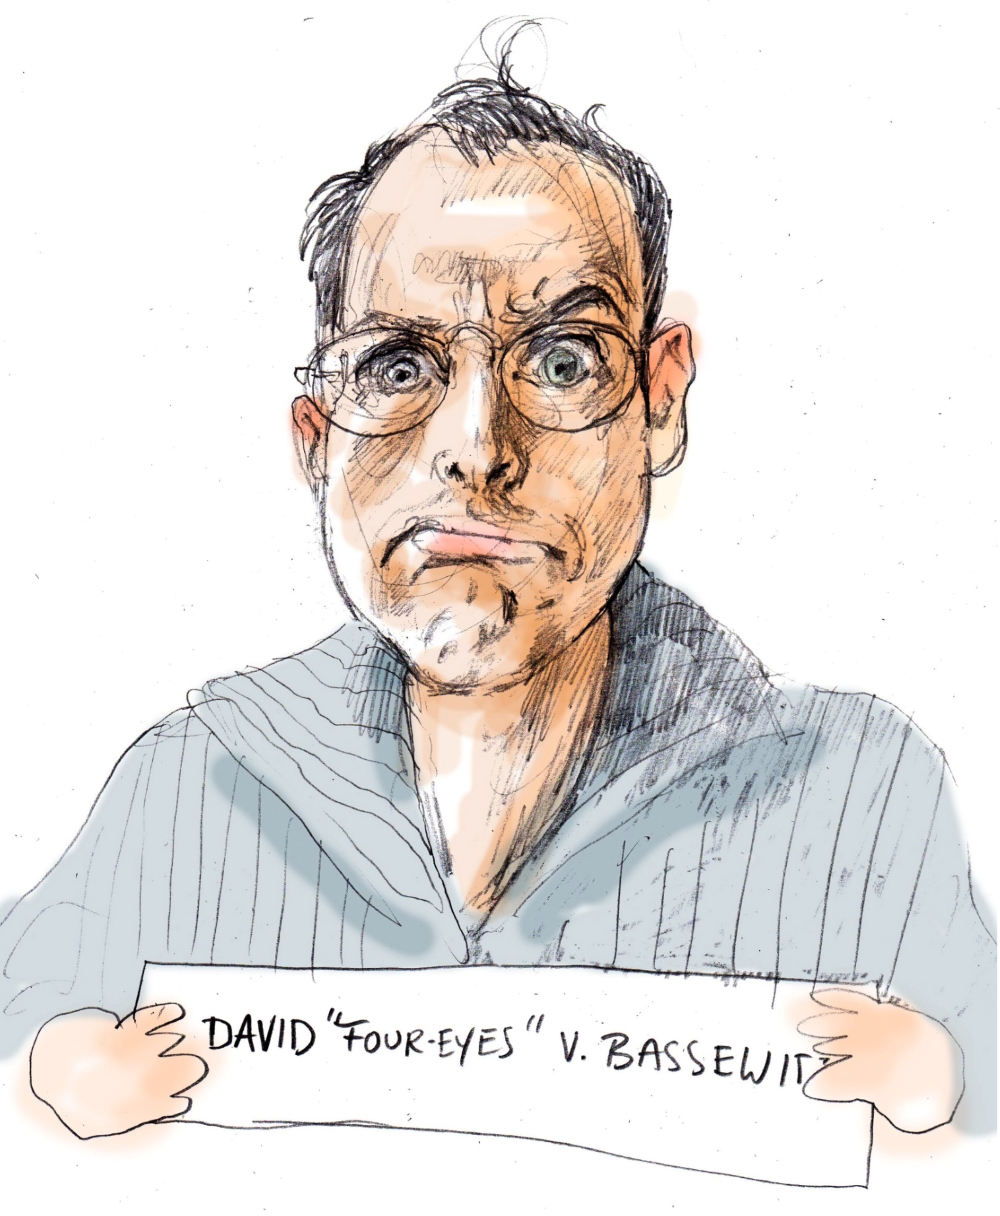 Self-portrait of David von Bassewitz